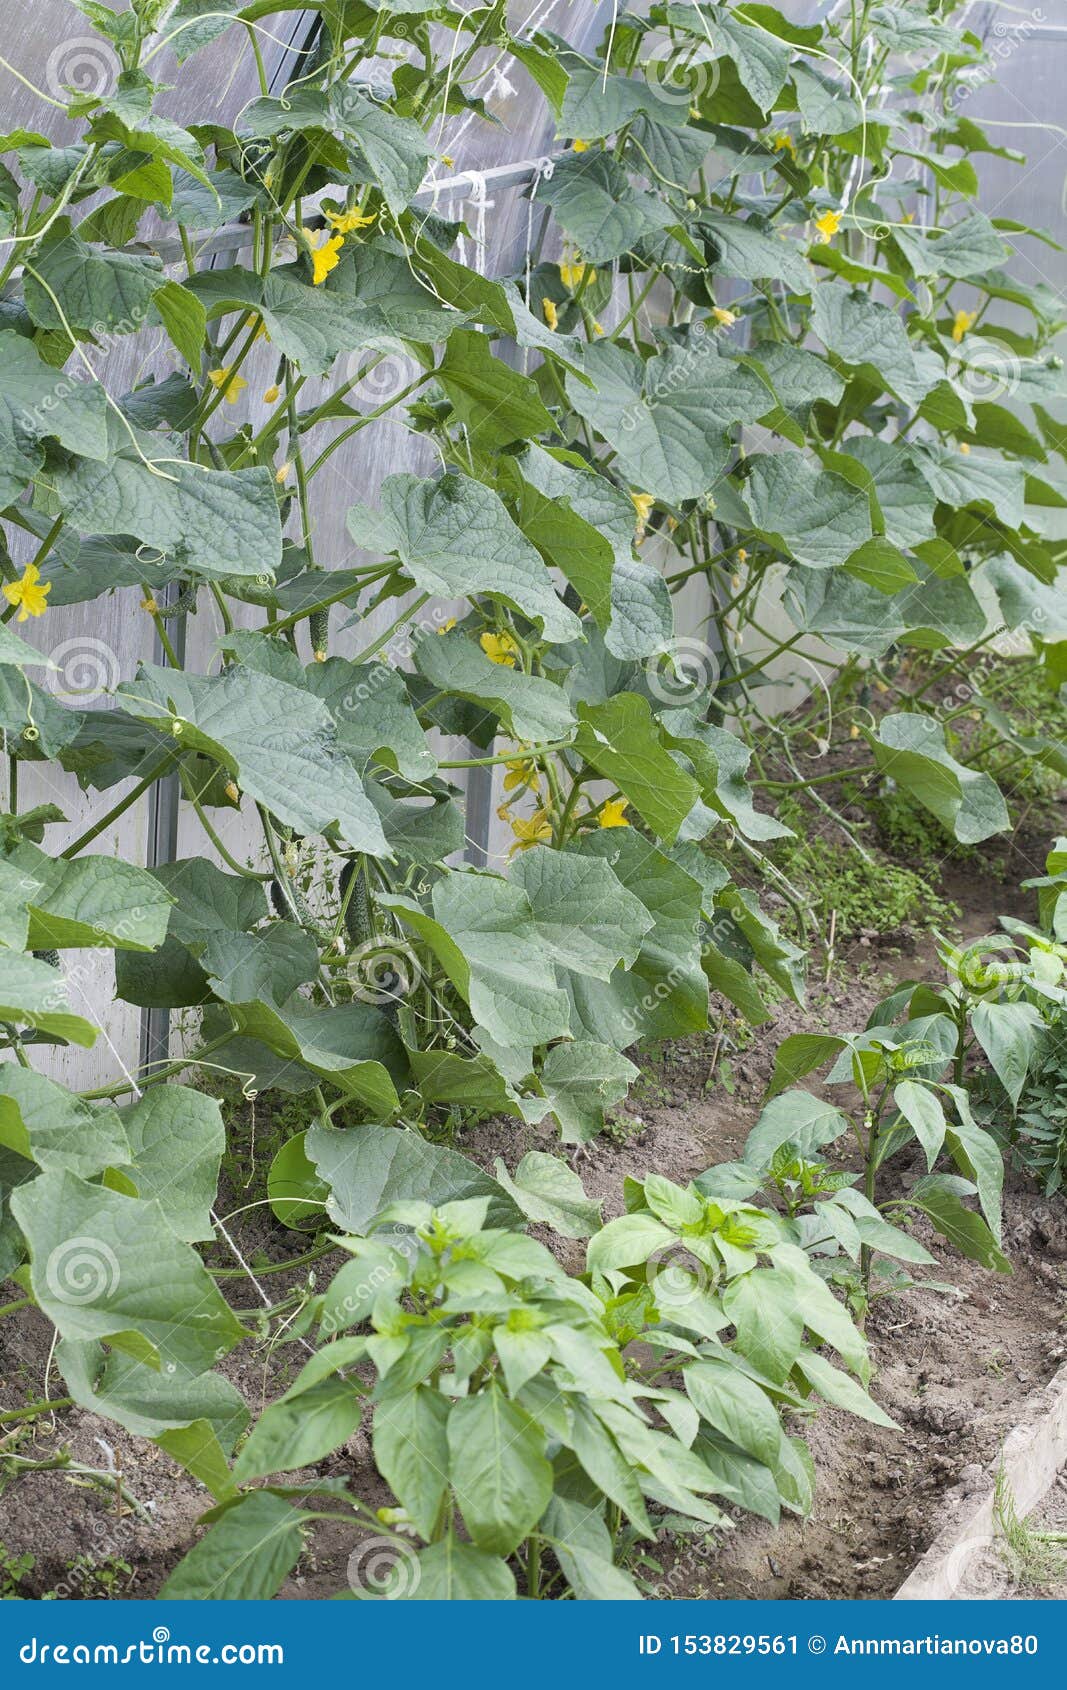 农作物-绿色食品-黄瓜种植摄影【电商背景】-90设计网